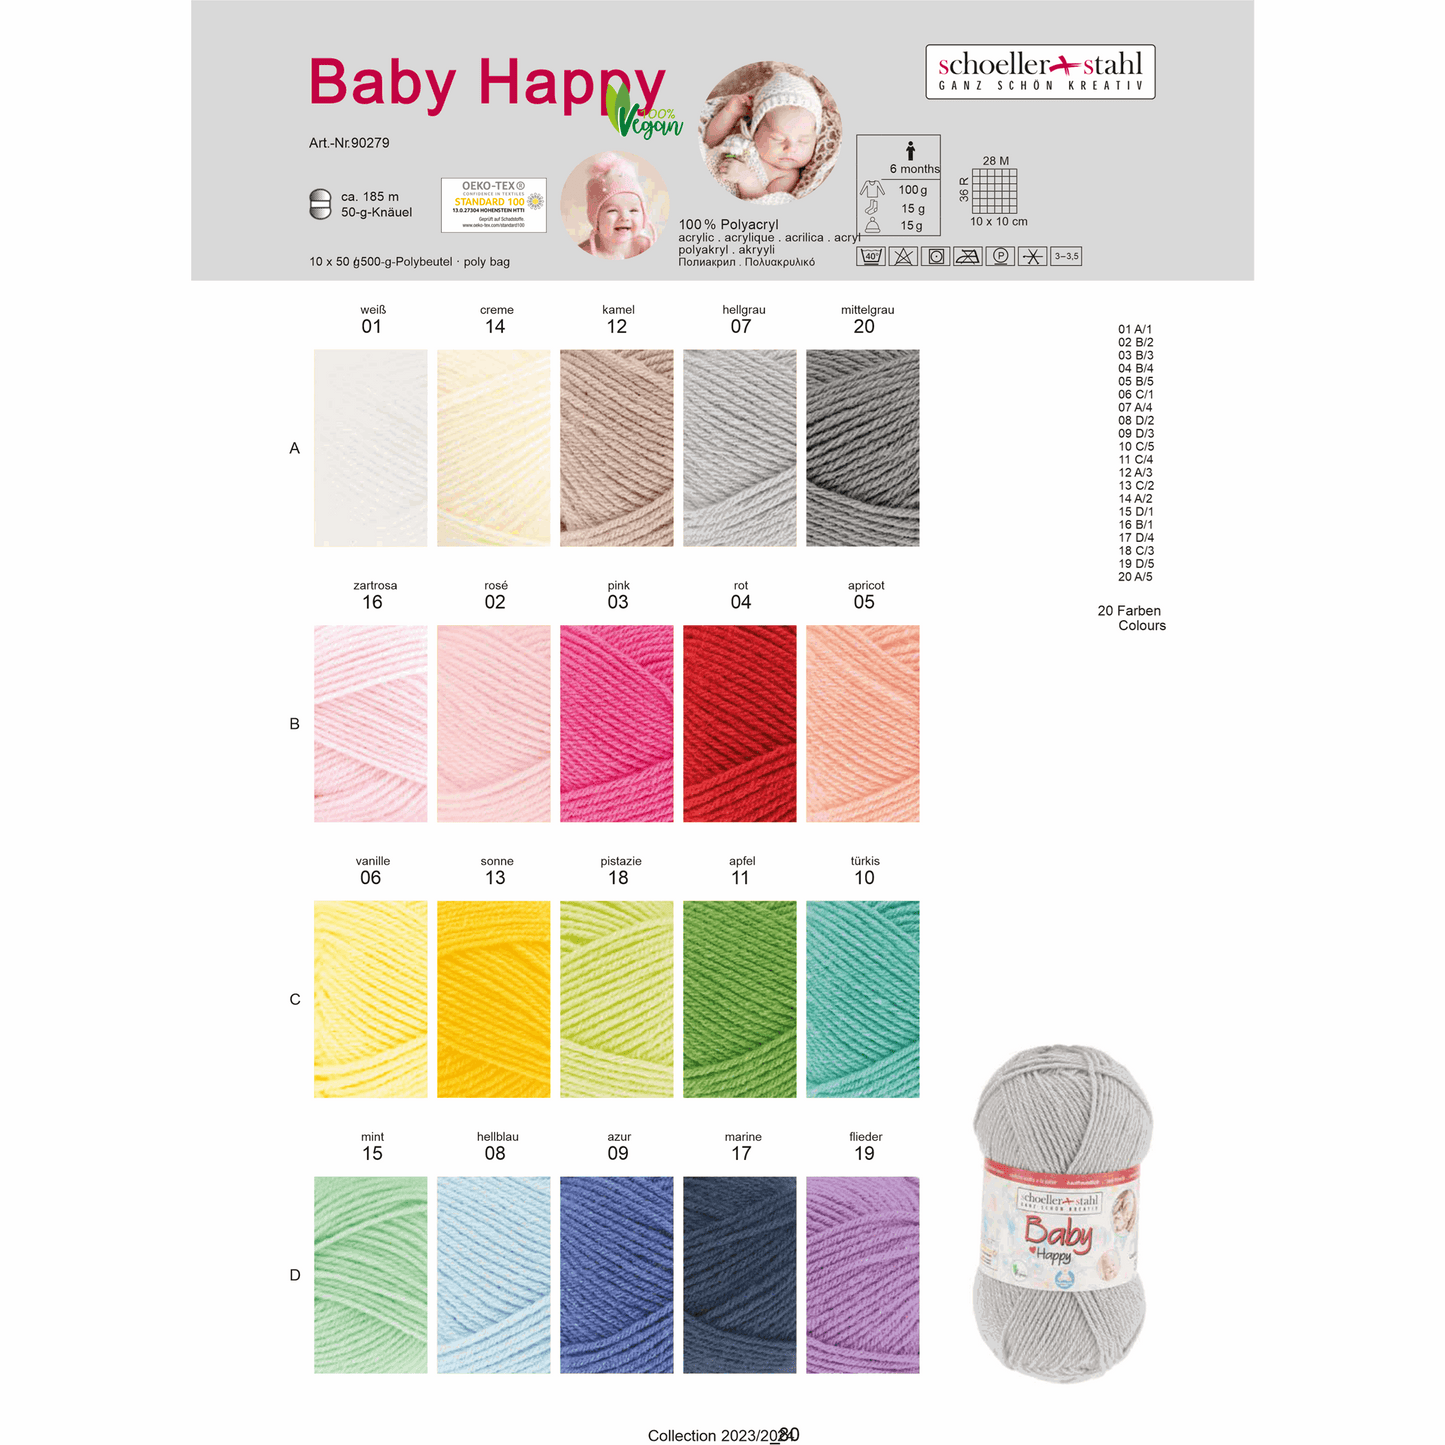 Baby happy 50g, 90279, Farbe 2, rosa